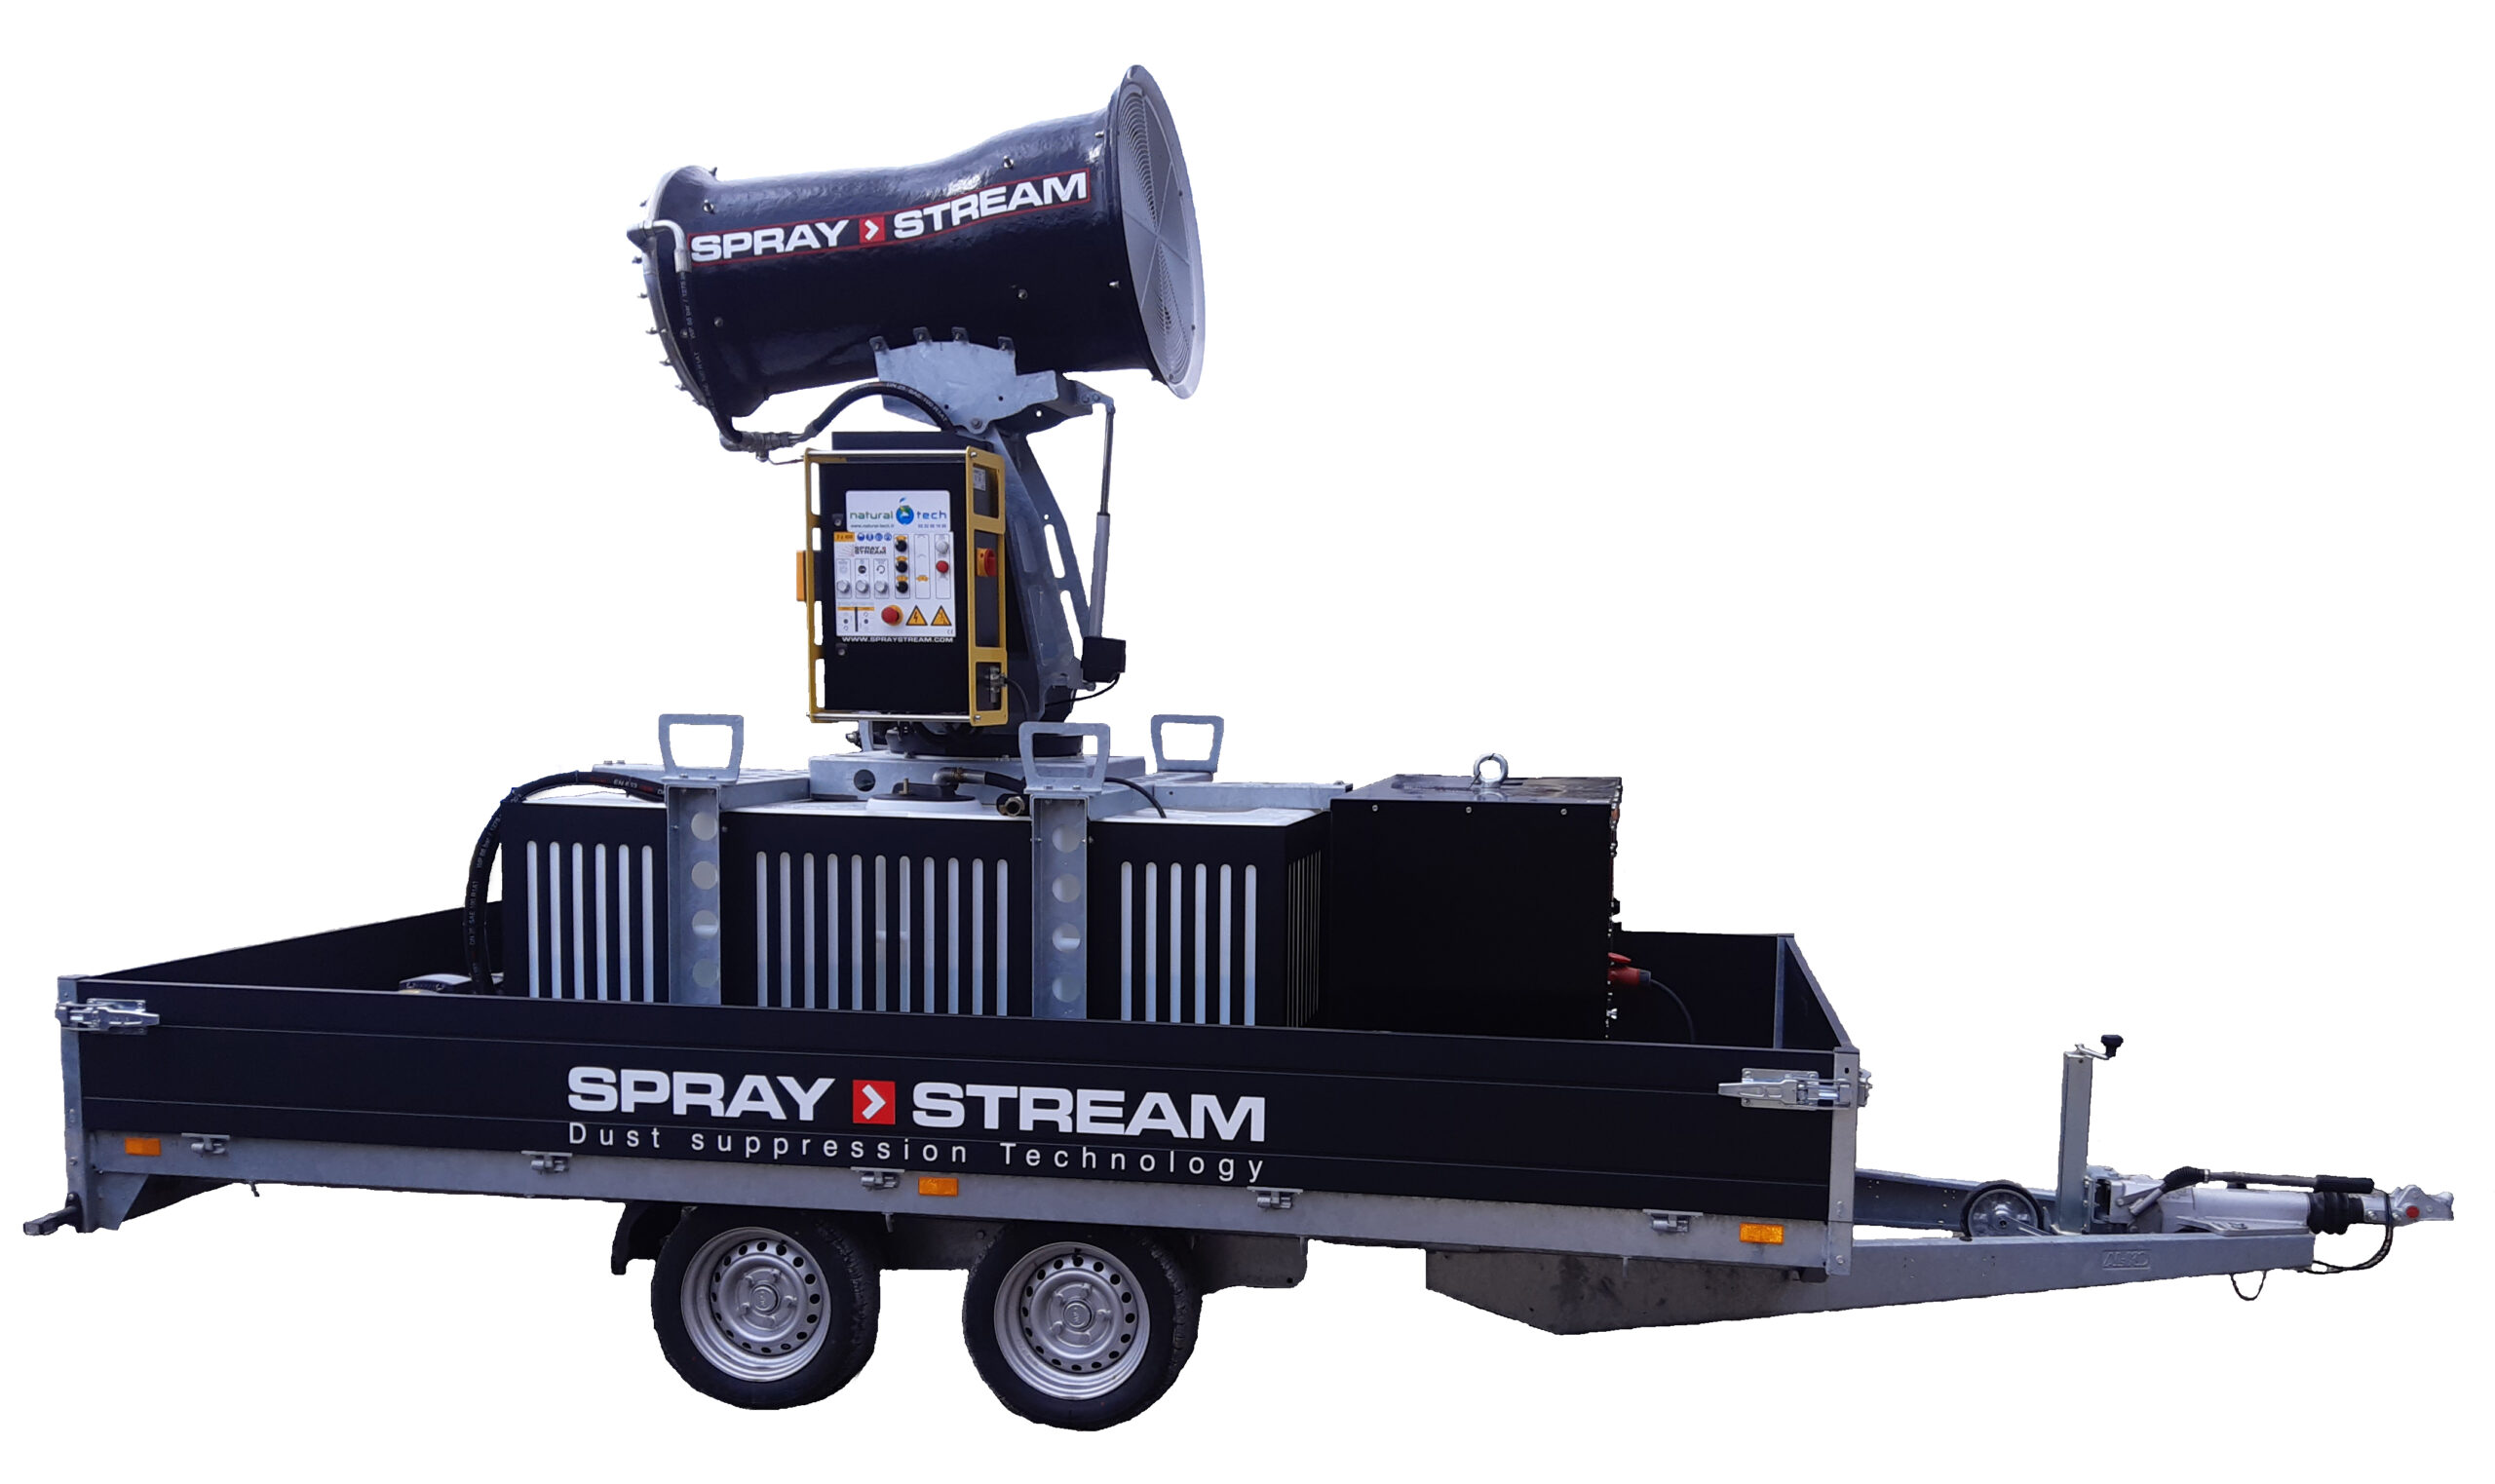 Brumisateur S4.0 AUTONOME Spraystream pour abattage poussières et traitement d'odeur, d'une portée de 35 à 40 m en application extérieur. Equipement 100% autonome et indépendant en eau et en électricité, sur remorque. 